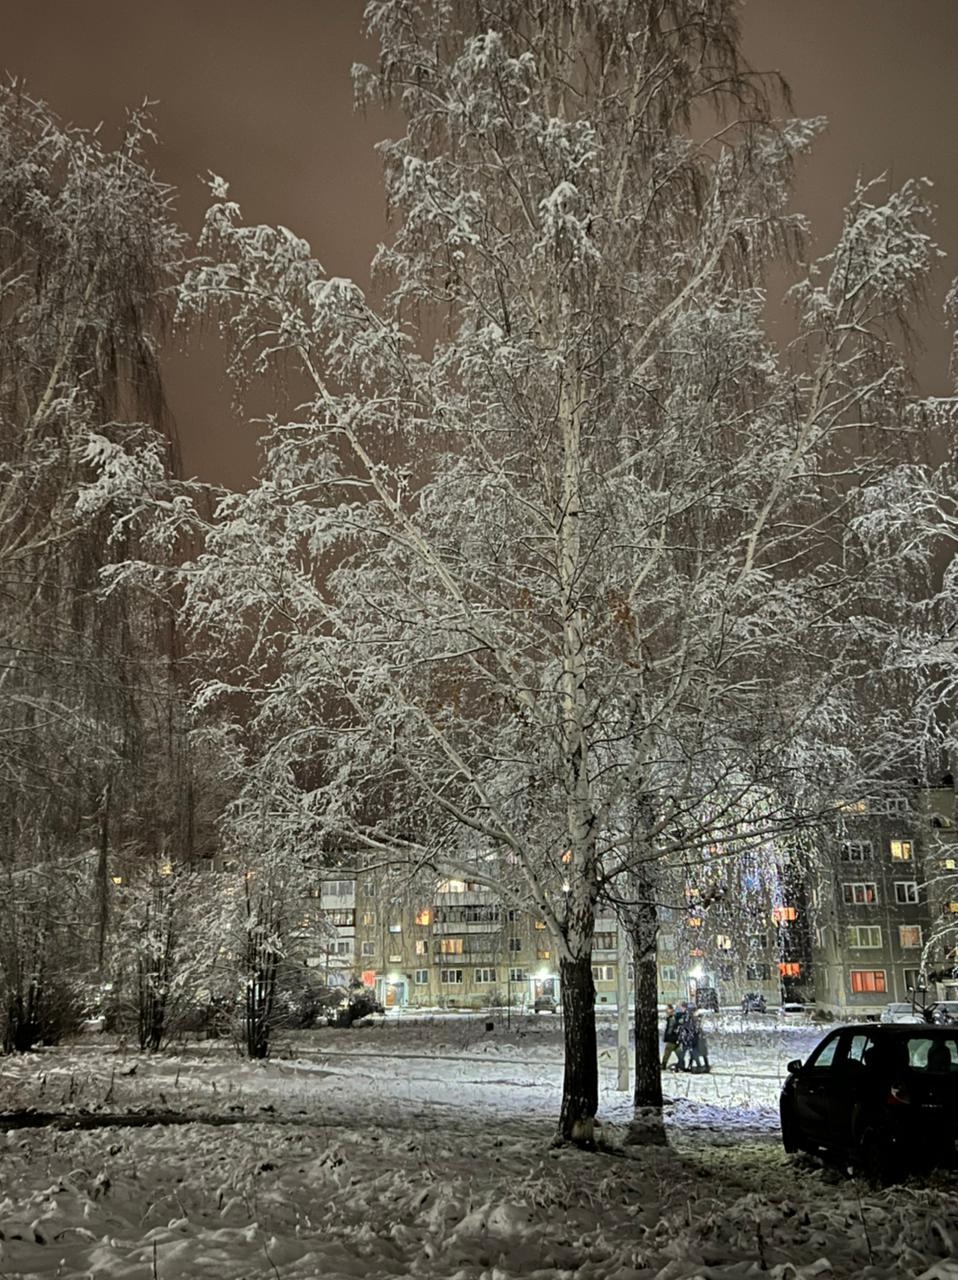 Слушать вечер холодной. Зимний город. Зимняя улица. Вечерний снегопад в городе. Зимний вечер.